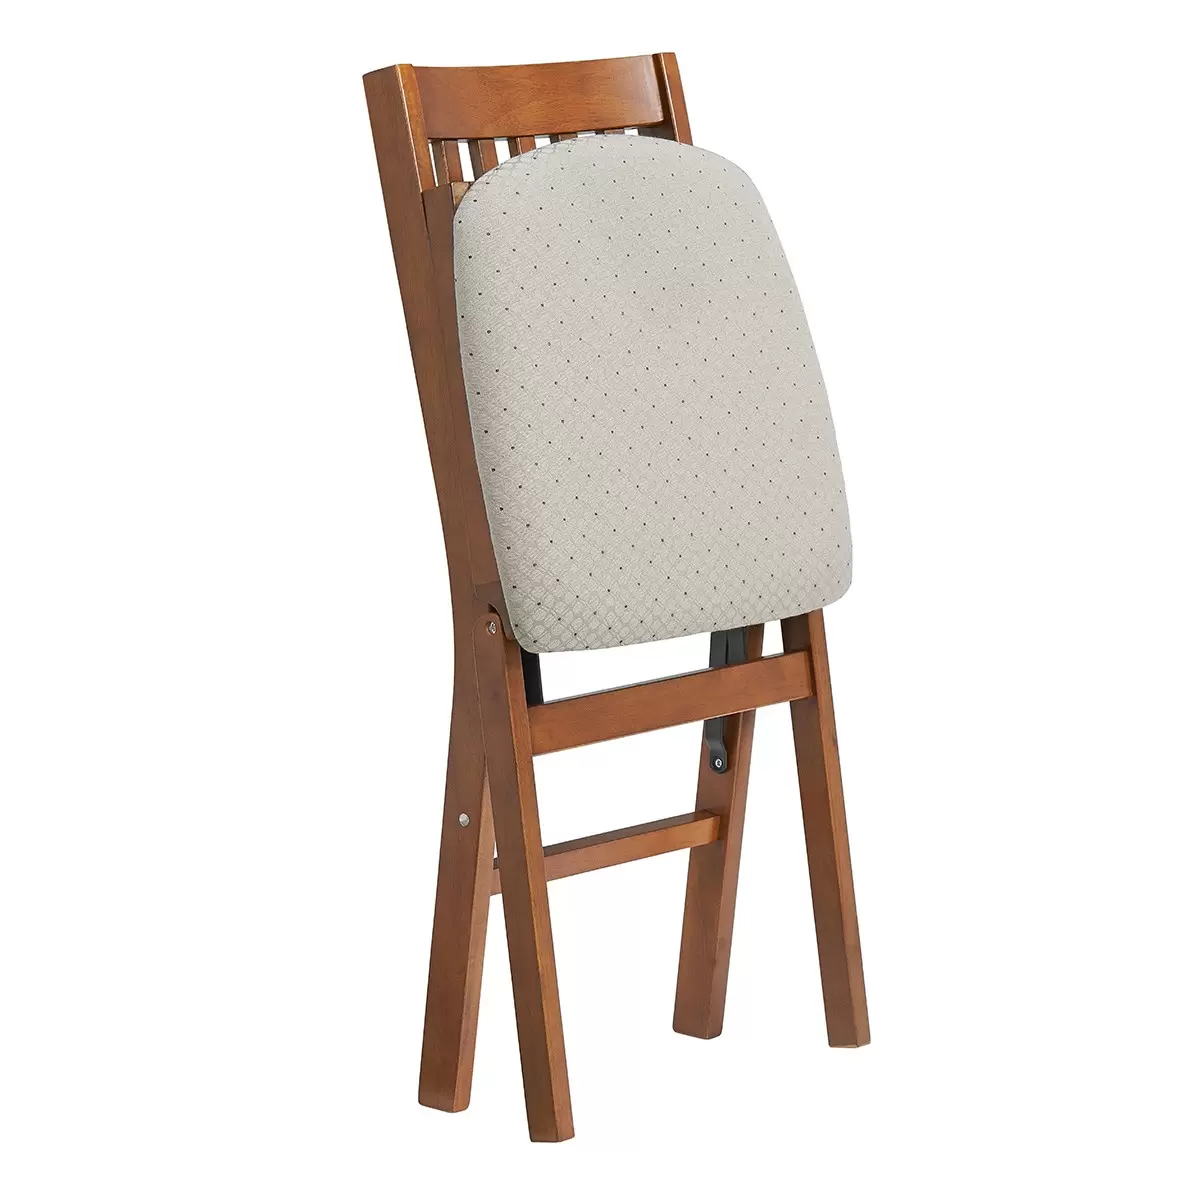 Stakmore 簡約實木摺疊椅 果木色